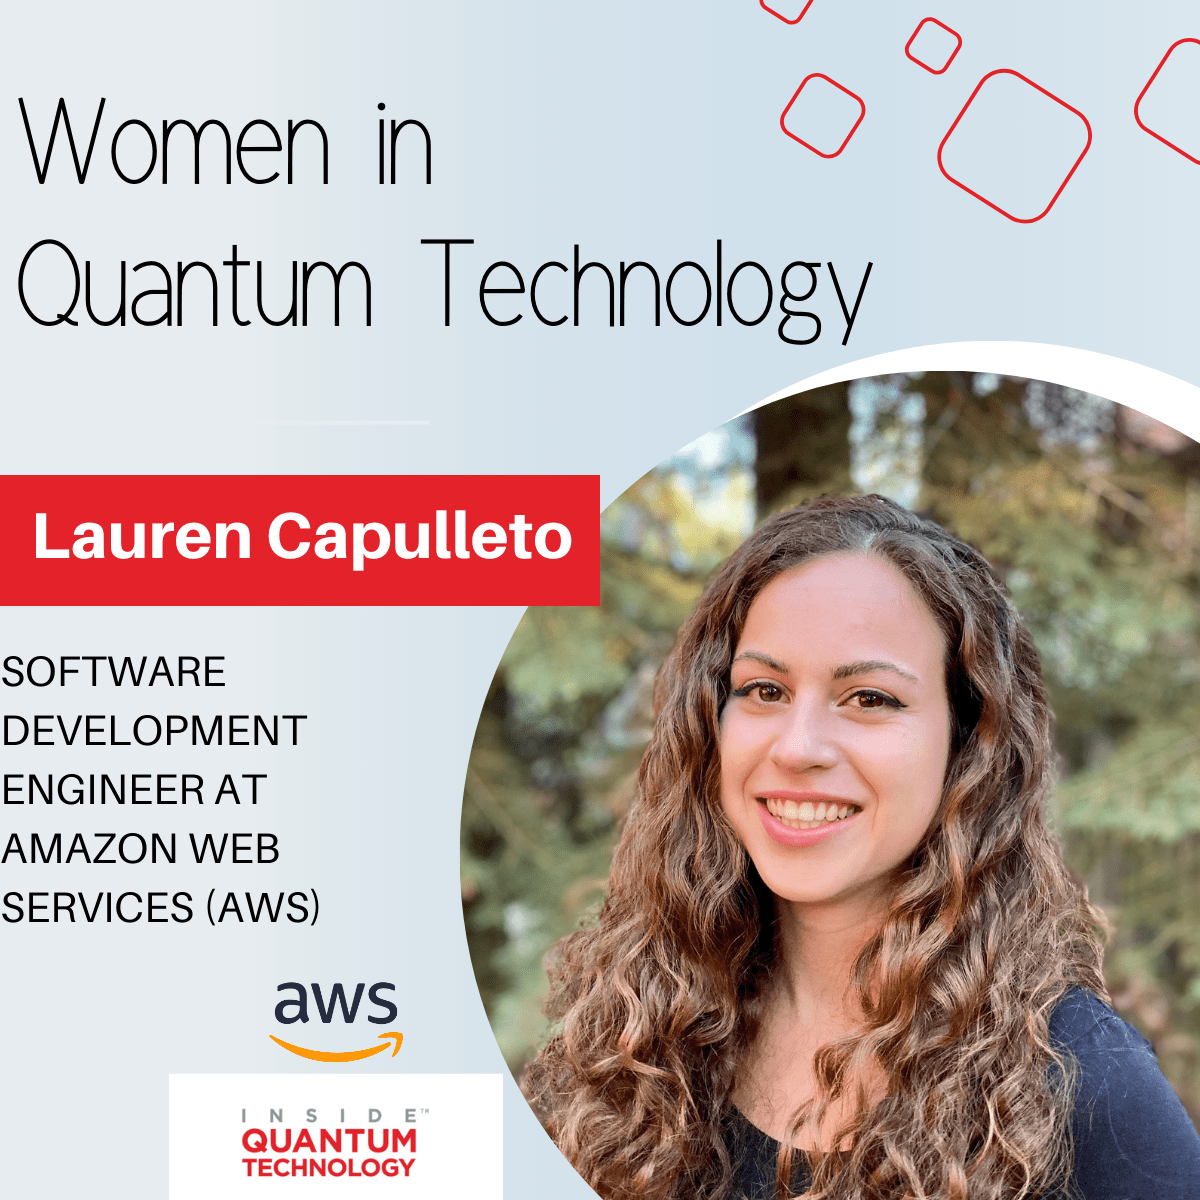 Lauren Capuleto, Softwareentwicklungsingenieurin bei Amazon Web Services (AWS), erzählt ihre Geschichte über den Einstieg in die Quantenindustrie.